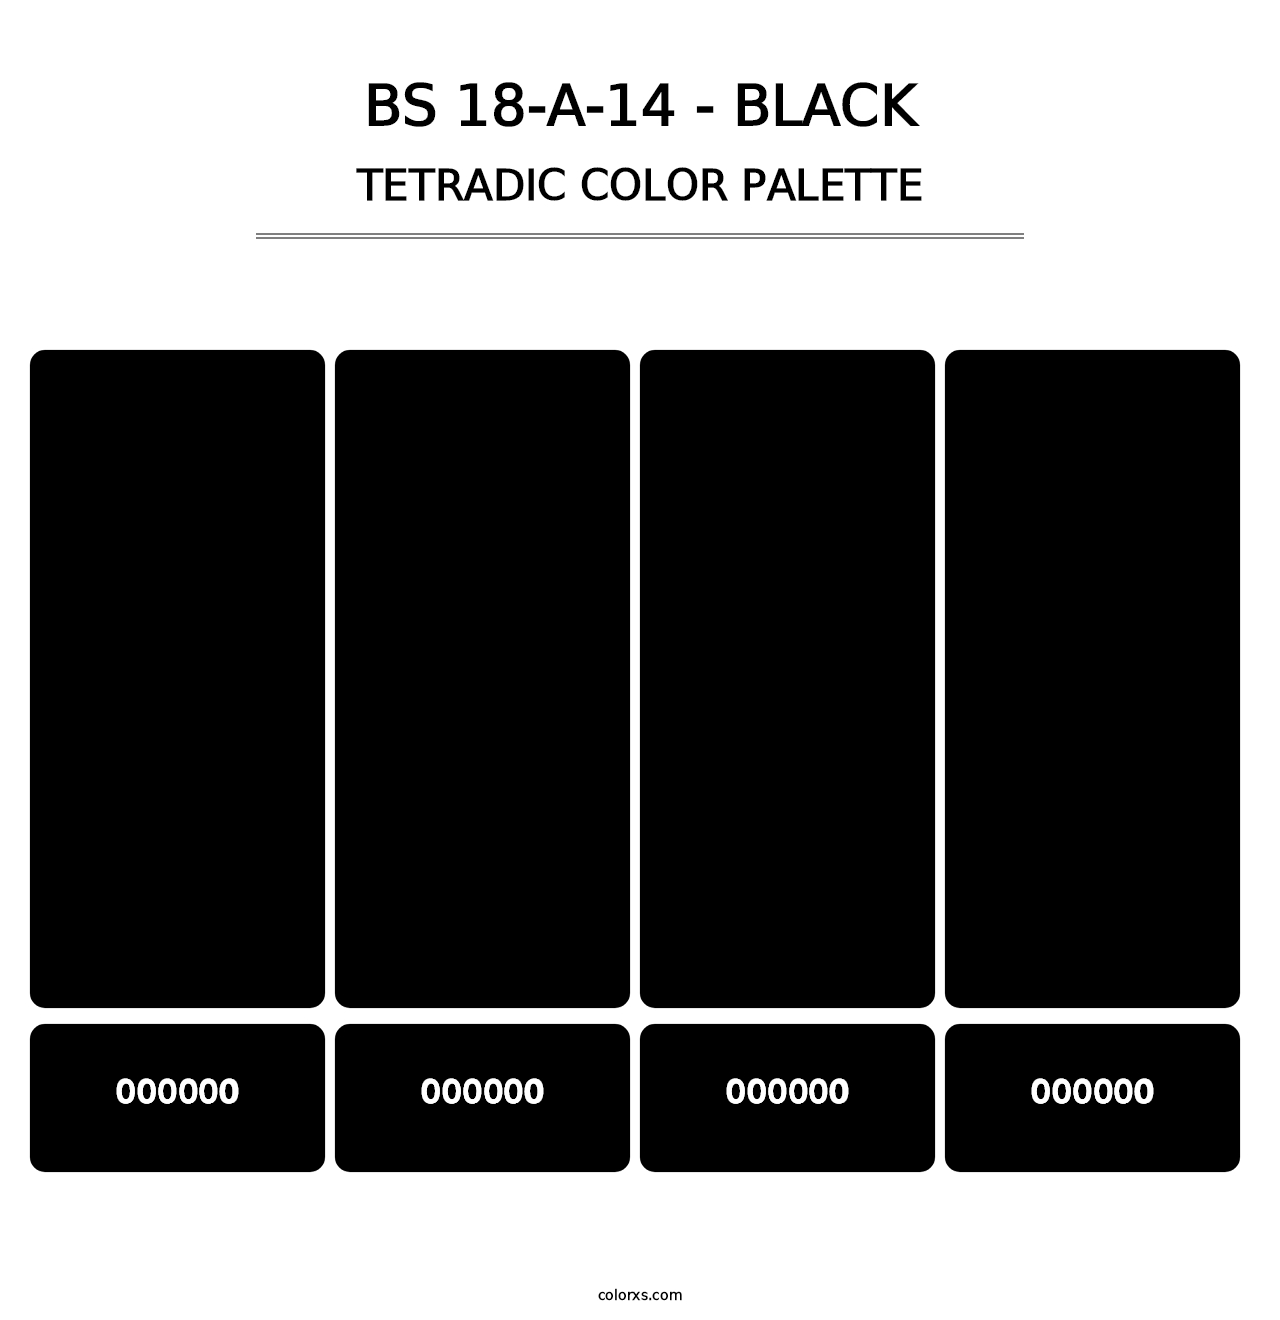 BS 18-A-14 - Black - Tetradic Color Palette